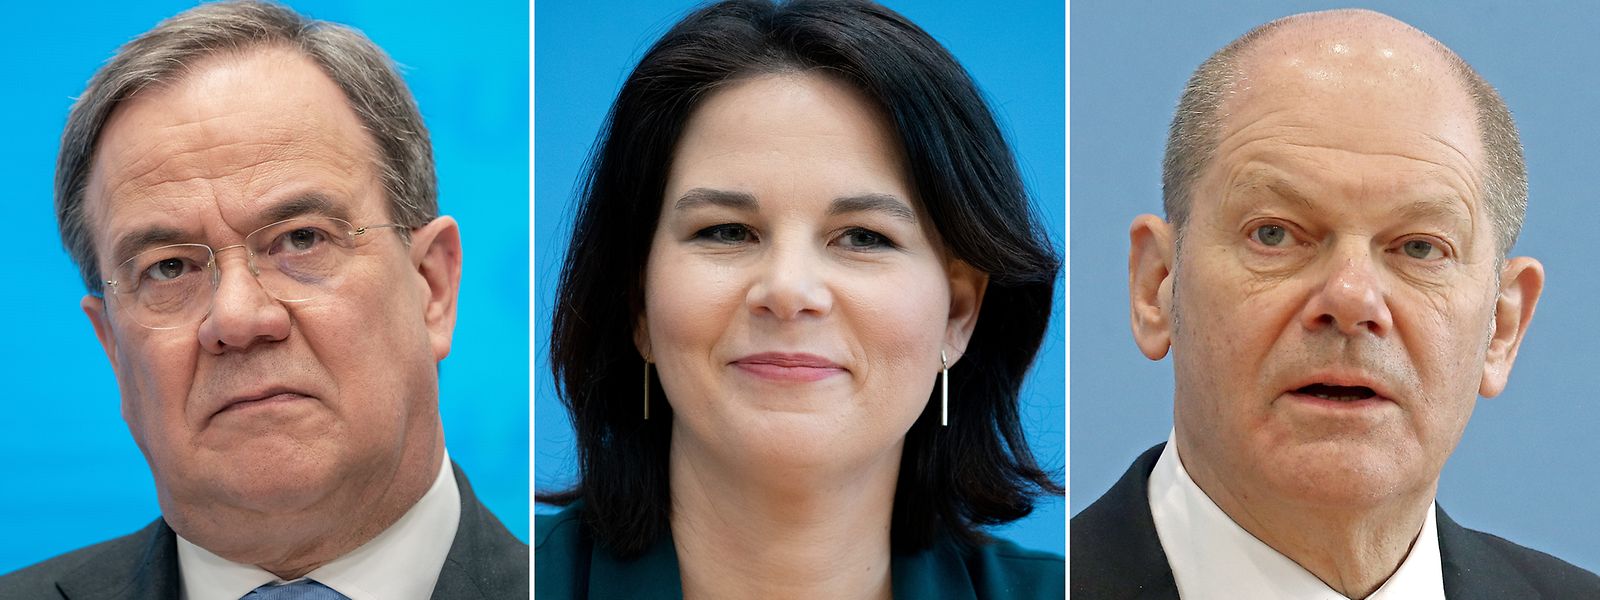 Die Spitzenkandidaten für die kommende Bundestagswahl von CDU/CSU, Armin Laschet (von l. nach r.), Bündnis 90/Die Grünen, Annalena Baerbock, und SPD, Olaf Scholz.